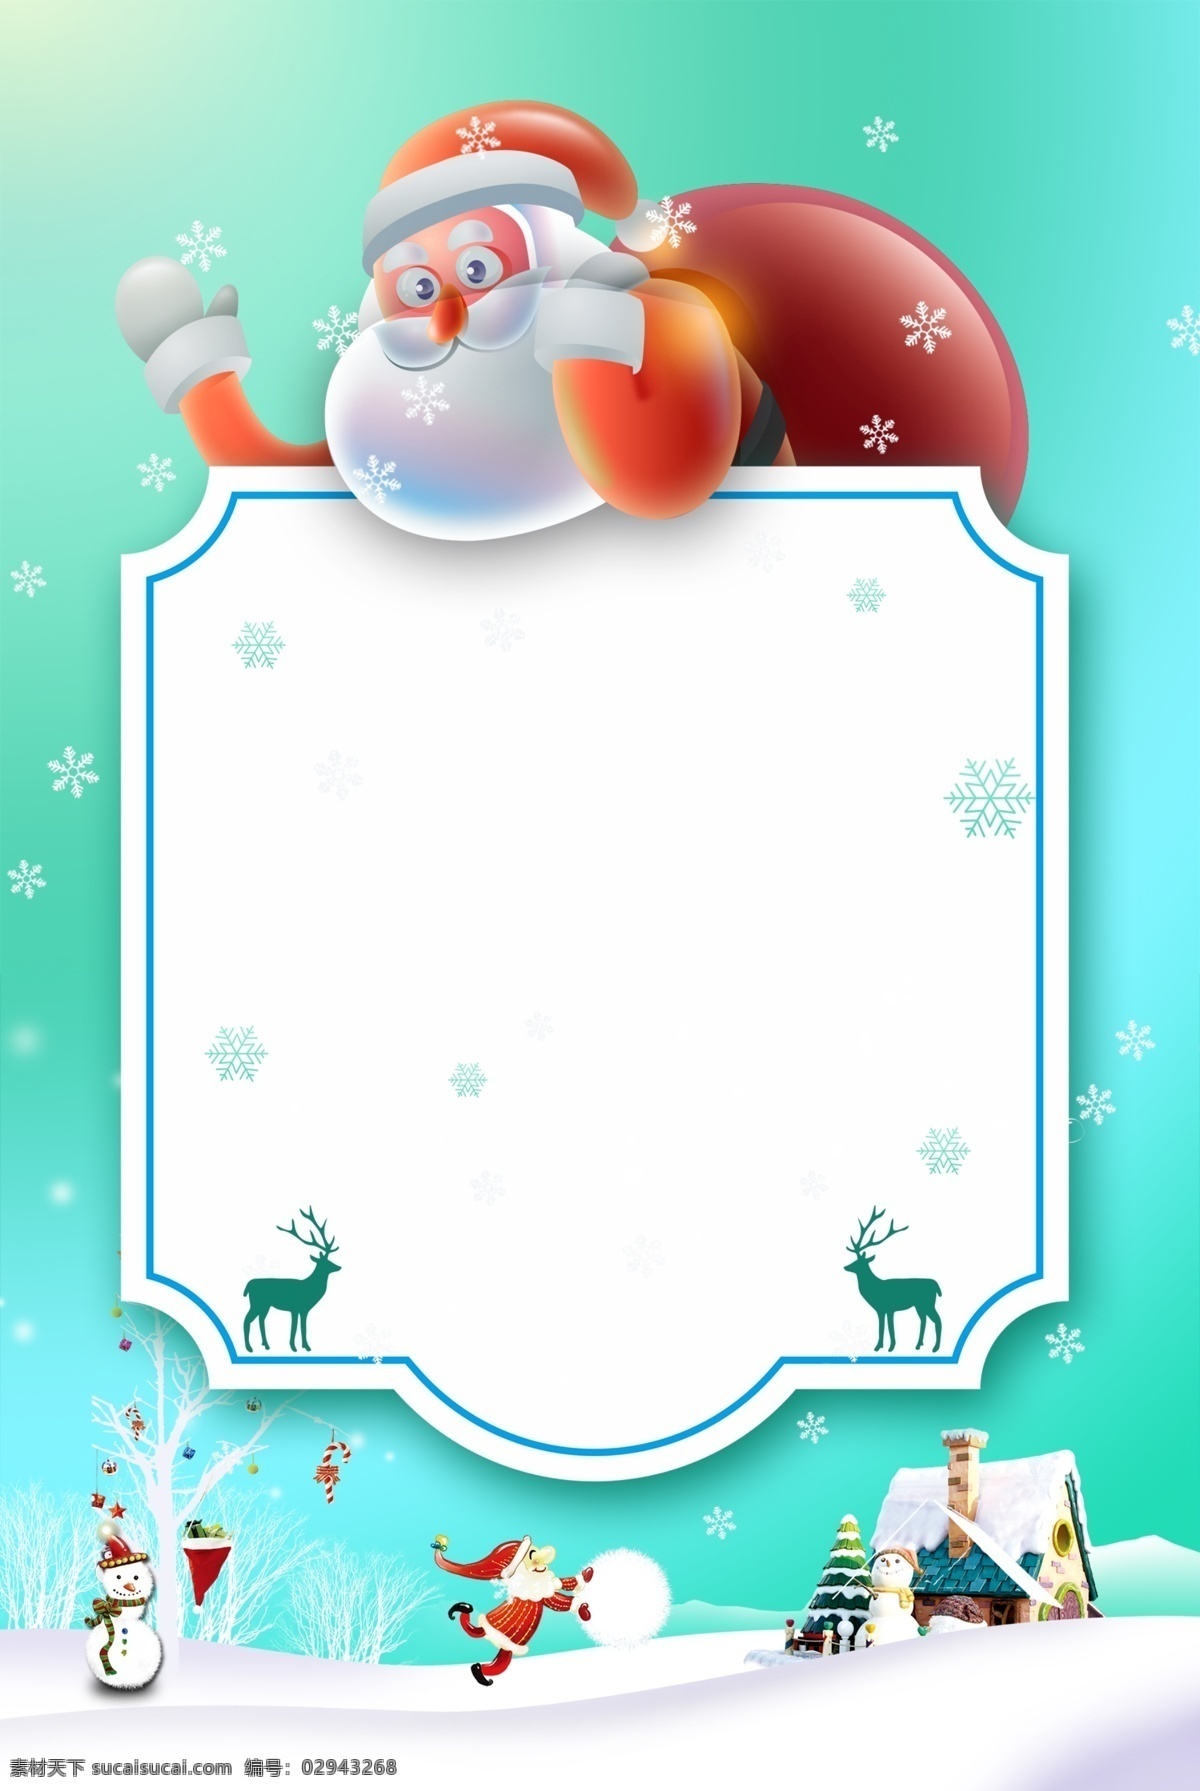 手绘 卡通 圣诞节 背景 可爱 房子 雪花 圣诞老人 麋鹿 雪地 圣诞